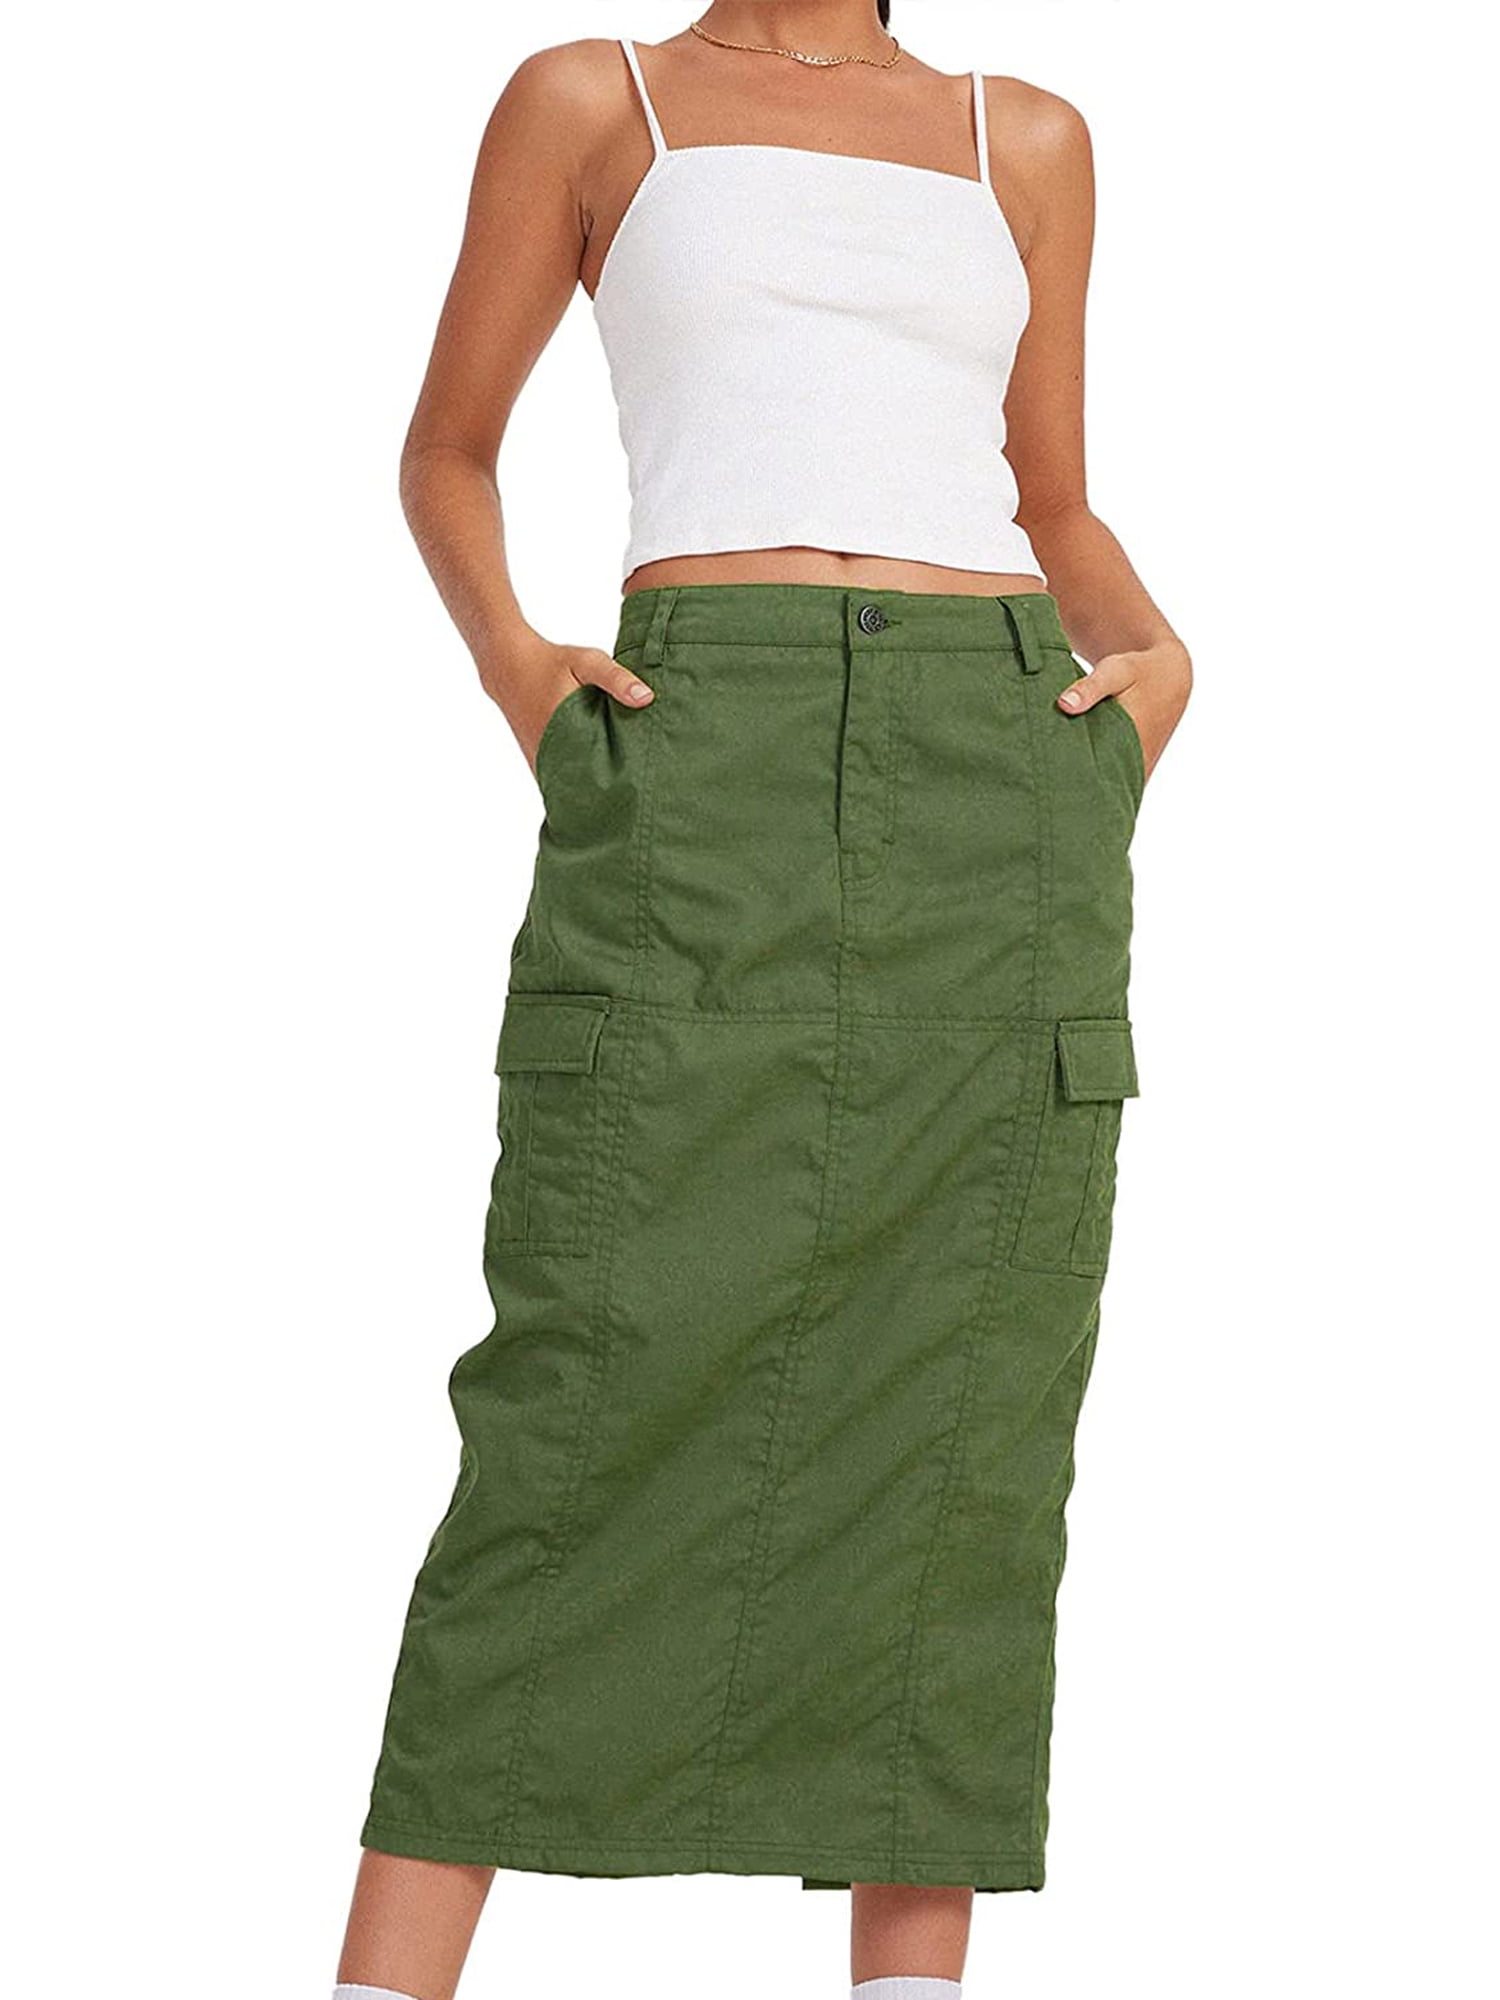 Cute Cheap Slip Skirts For Fall 2019 | POPSUGAR Fashion